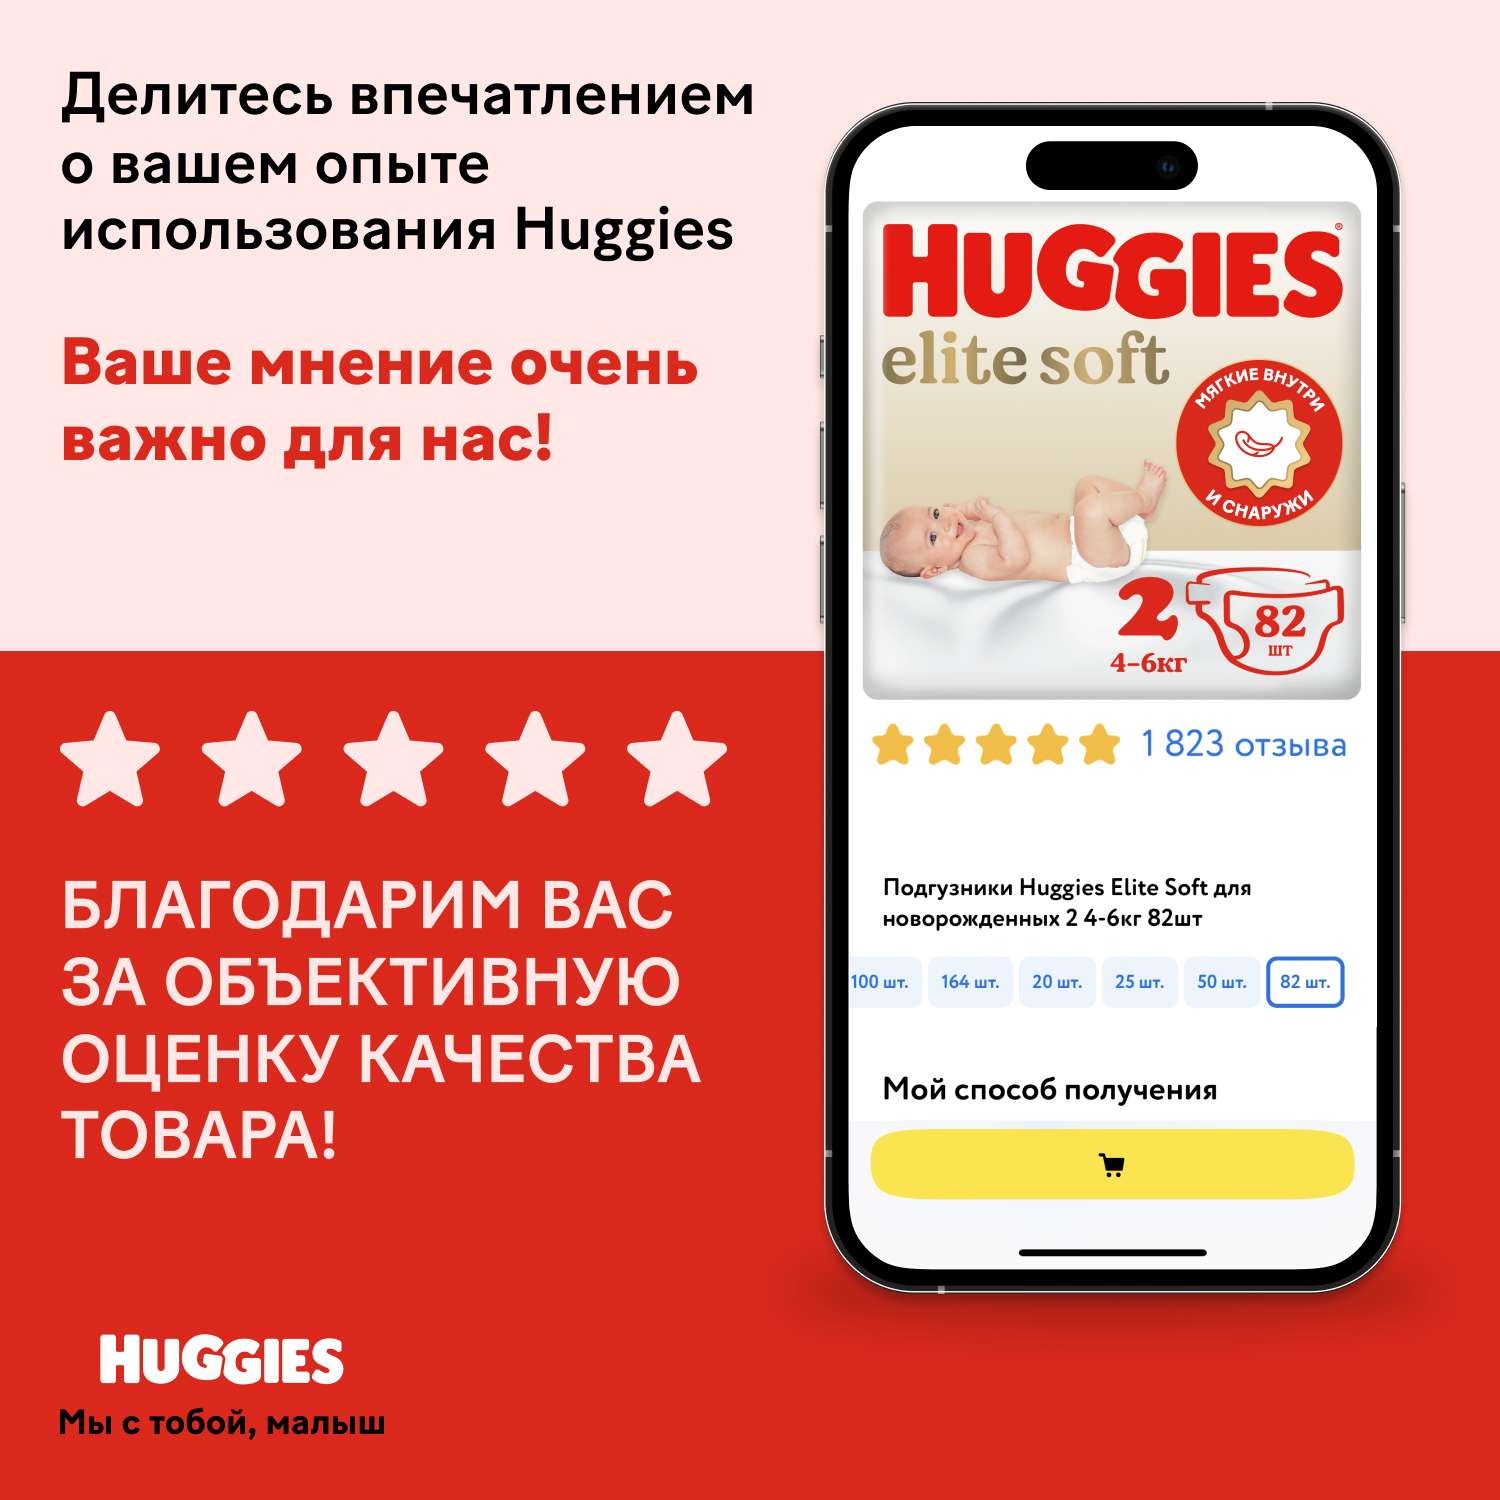 Подгузники Huggies Elite Soft для новорожденных 2 4-6кг 100шт - фото 22